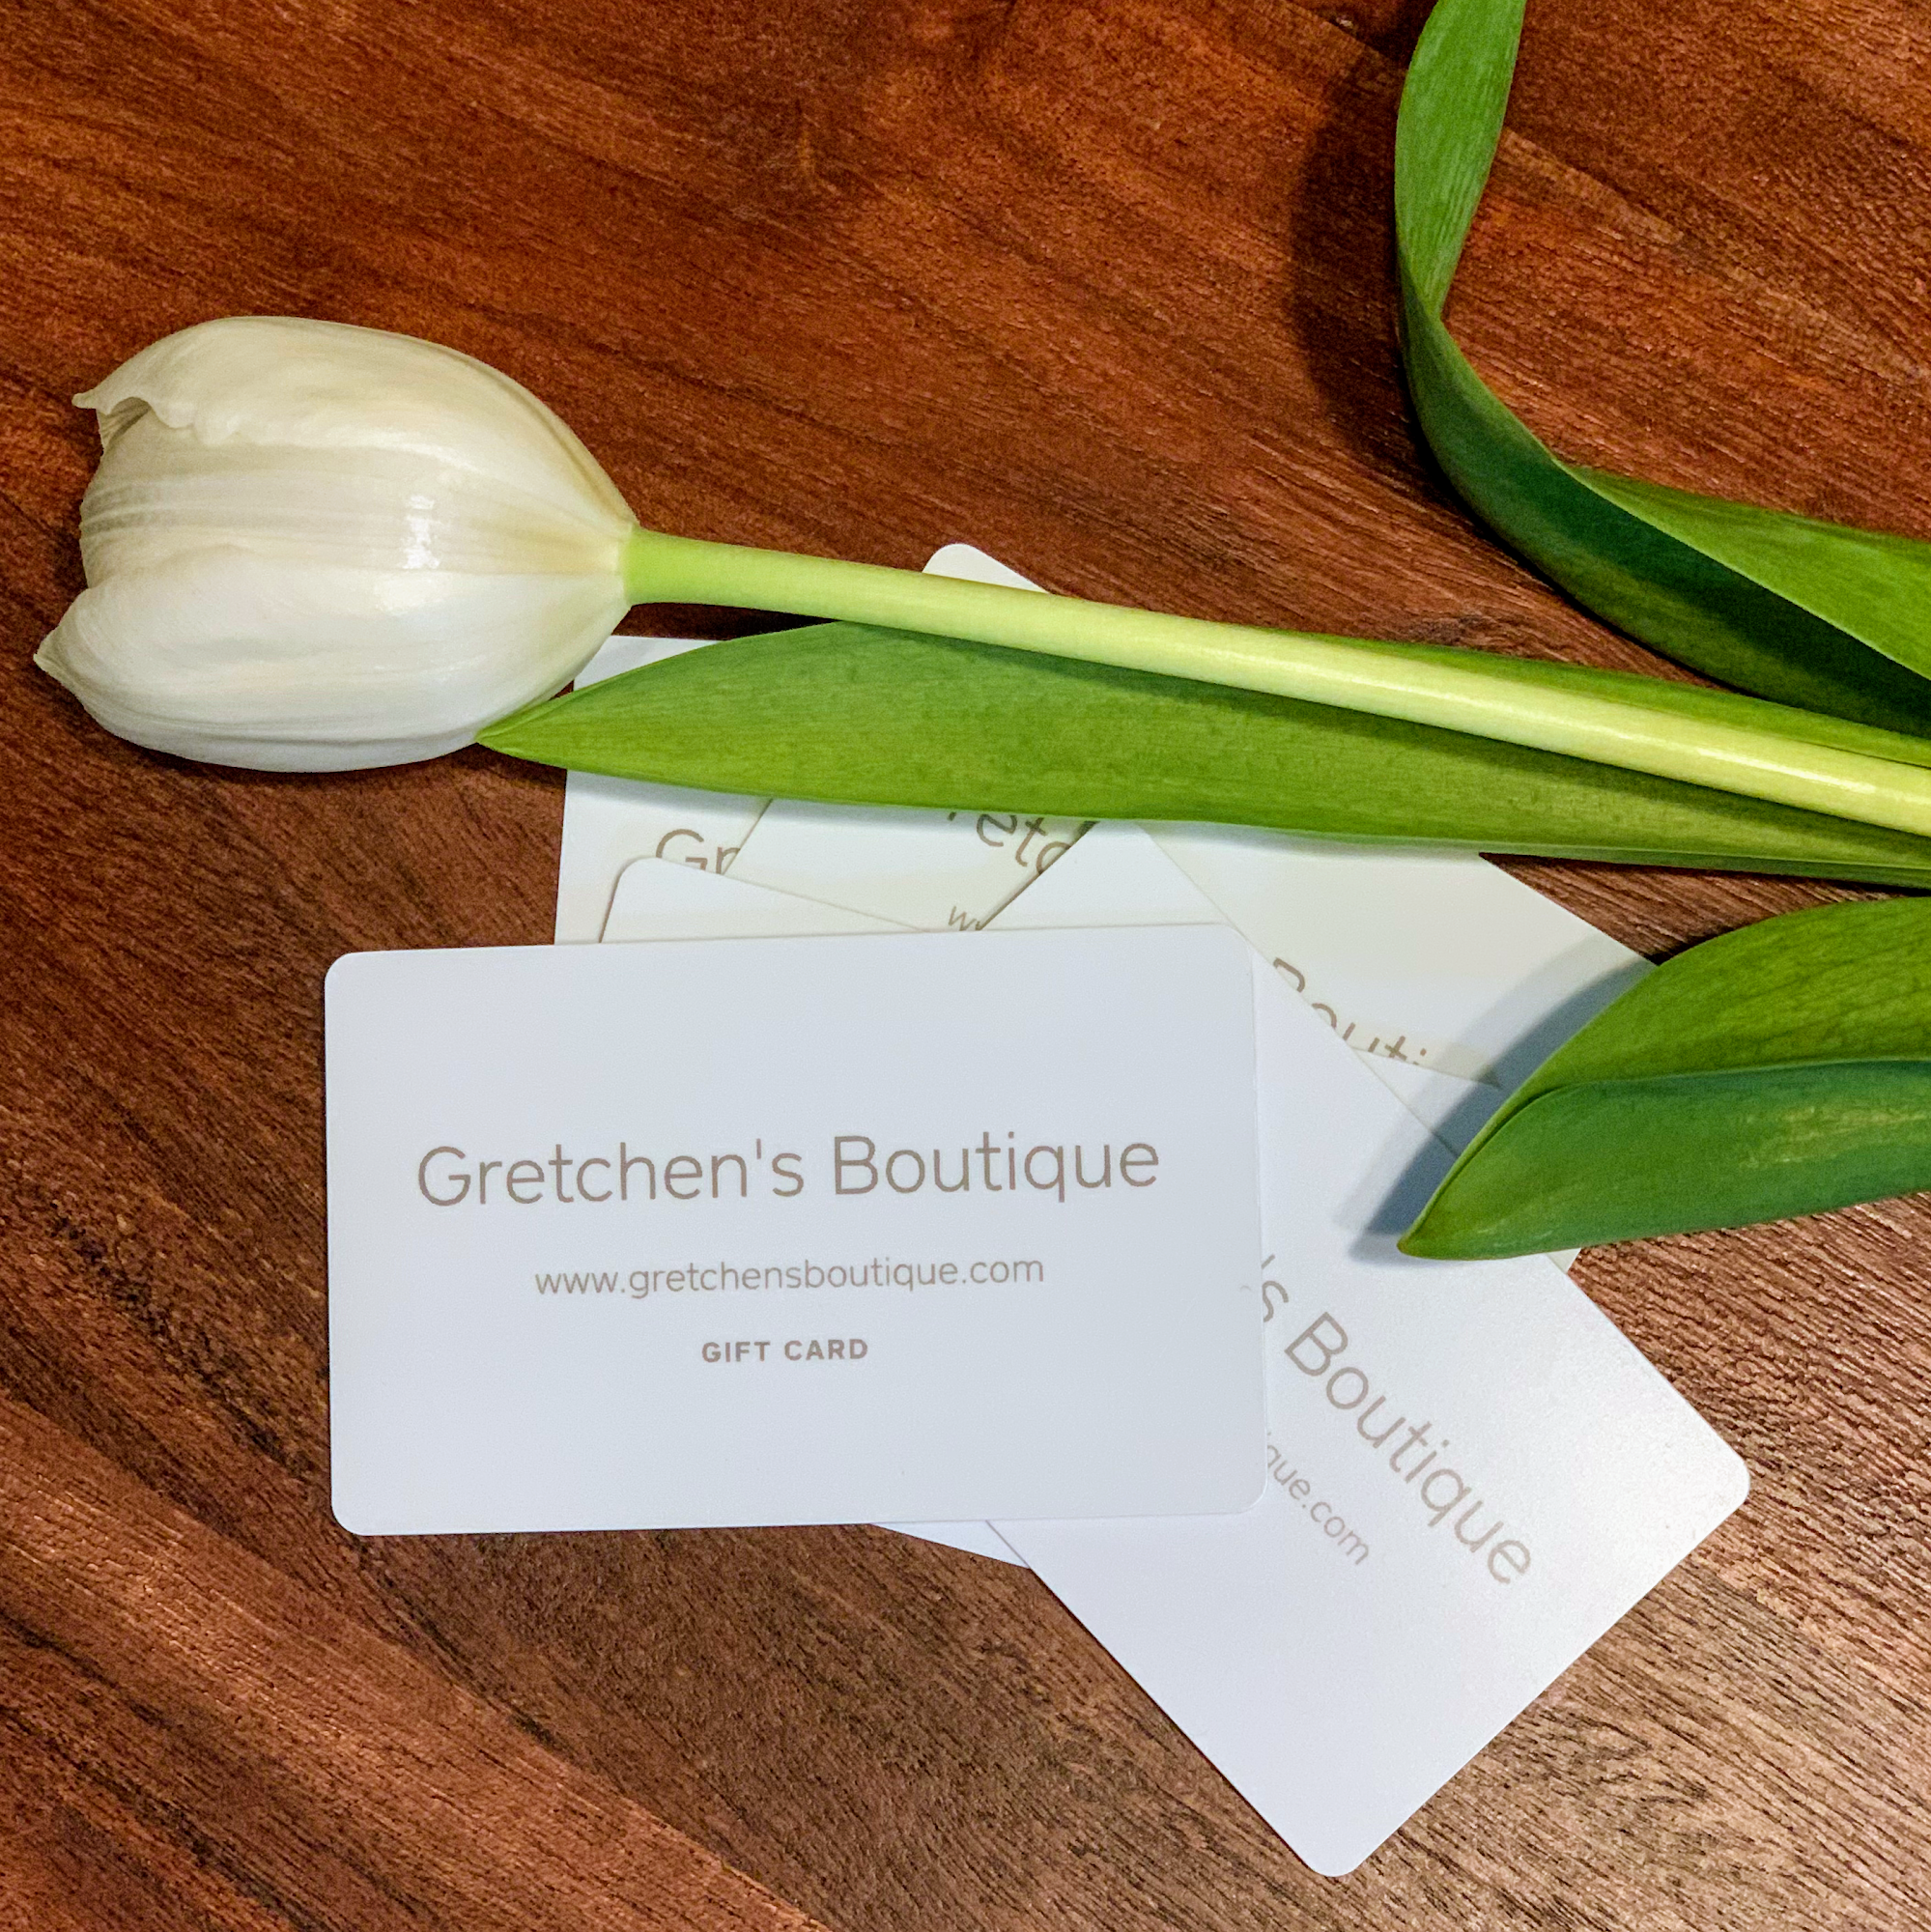 Gretchen's Boutique